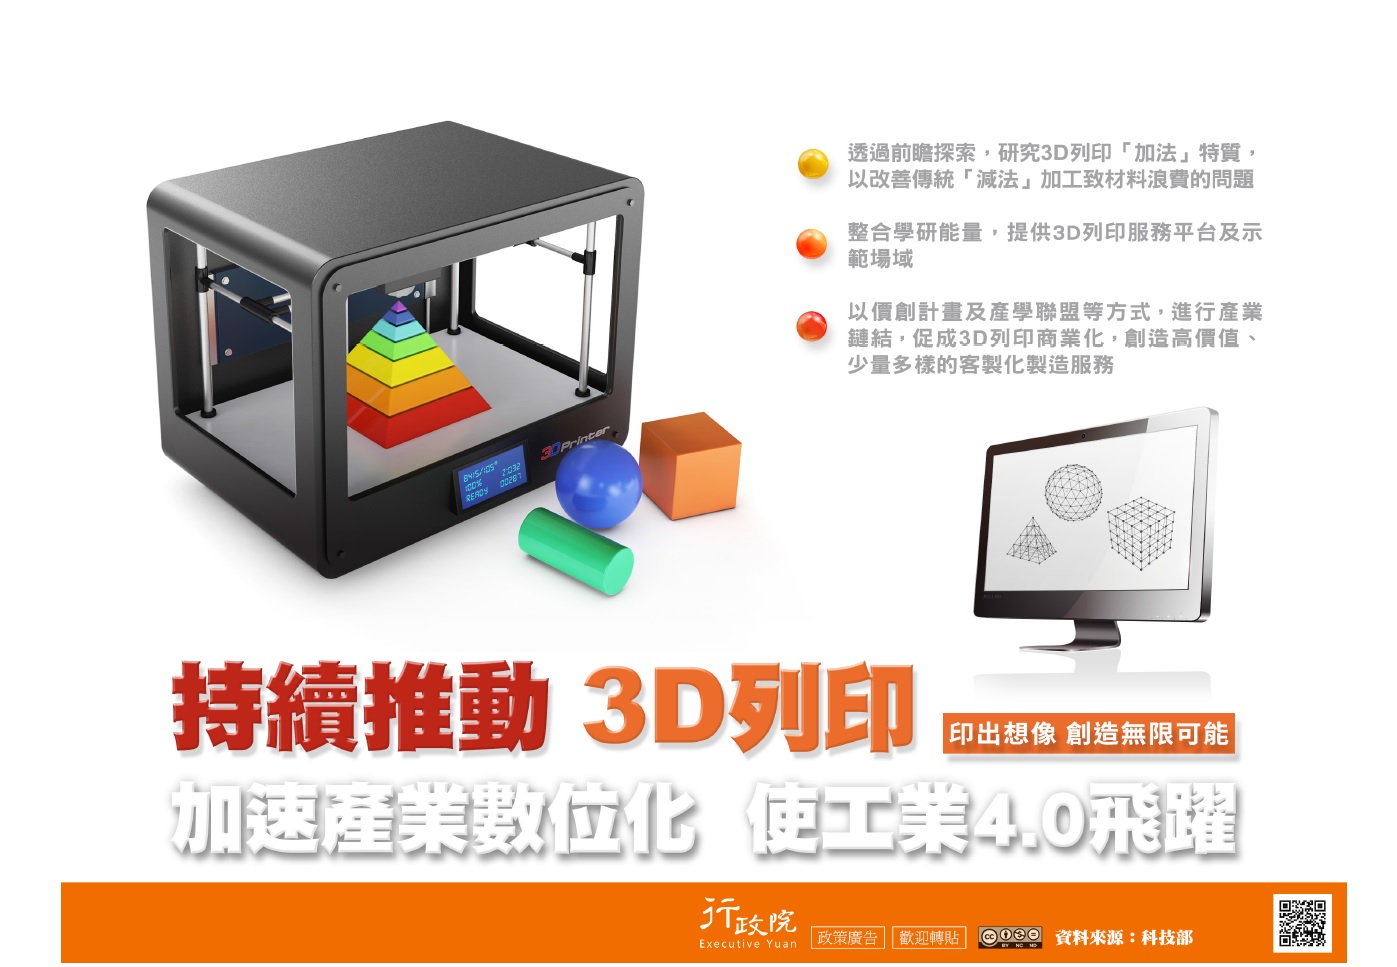 「持續推動3D列印」